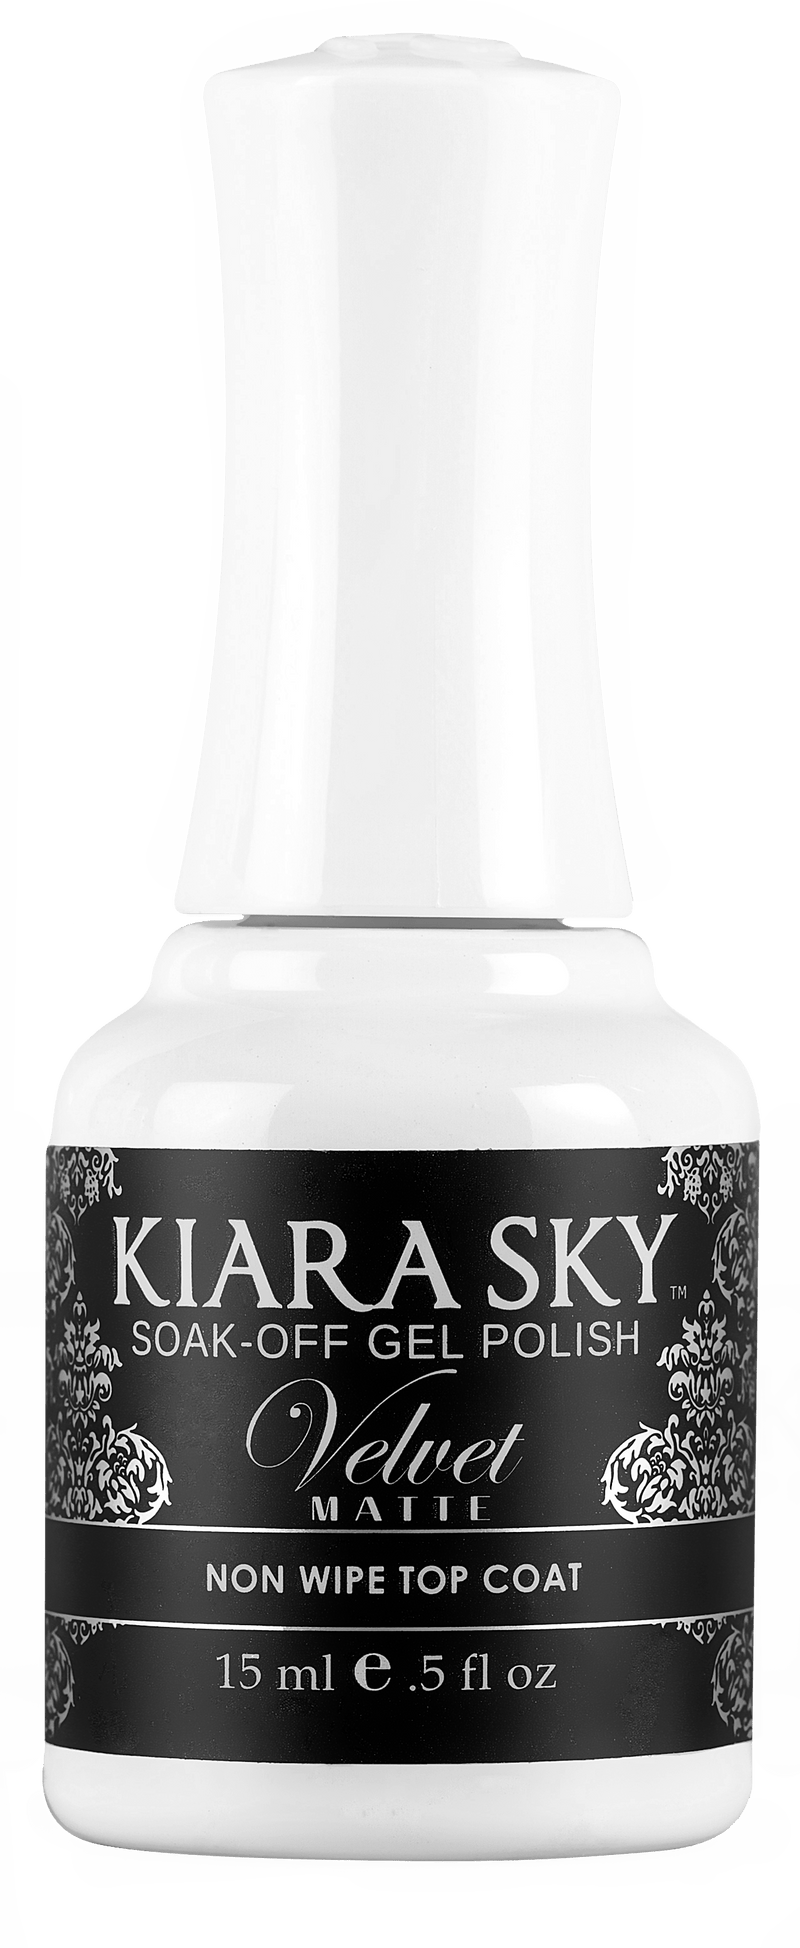 Kiara Sky Gel Nail Polish - Velvet Matte Non Wipe Top Coat GMTOP01 